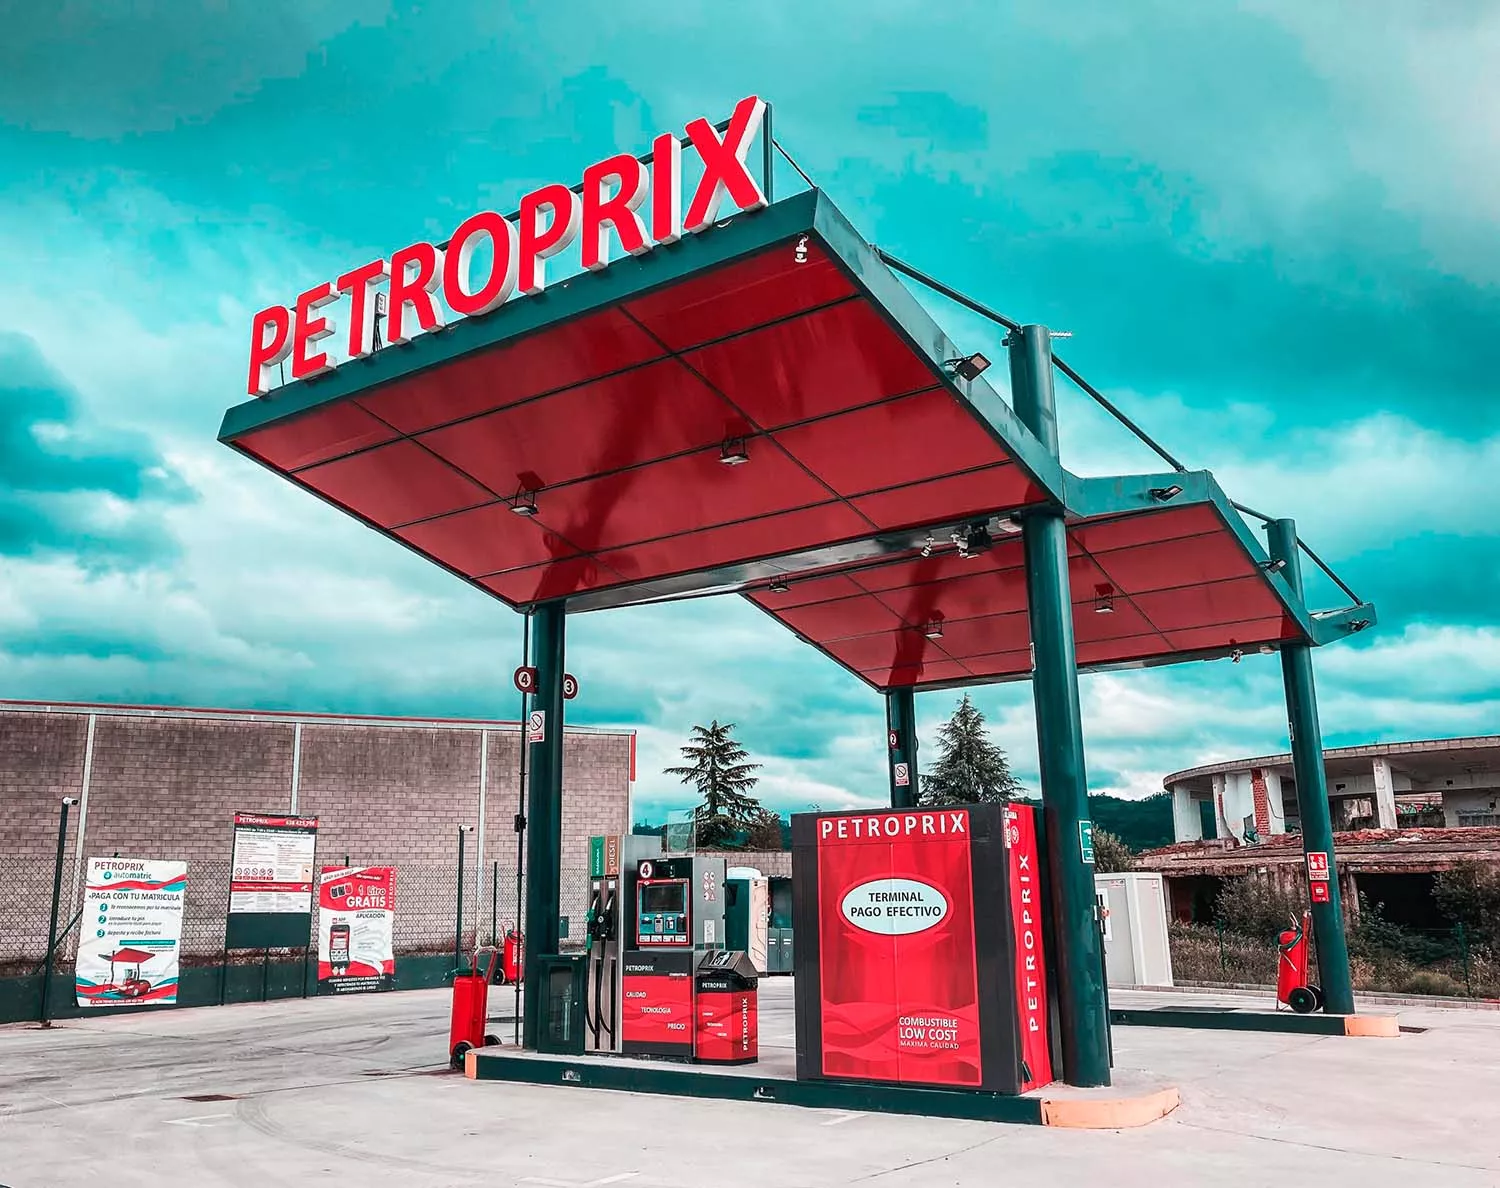 Gasolinera Petroprix